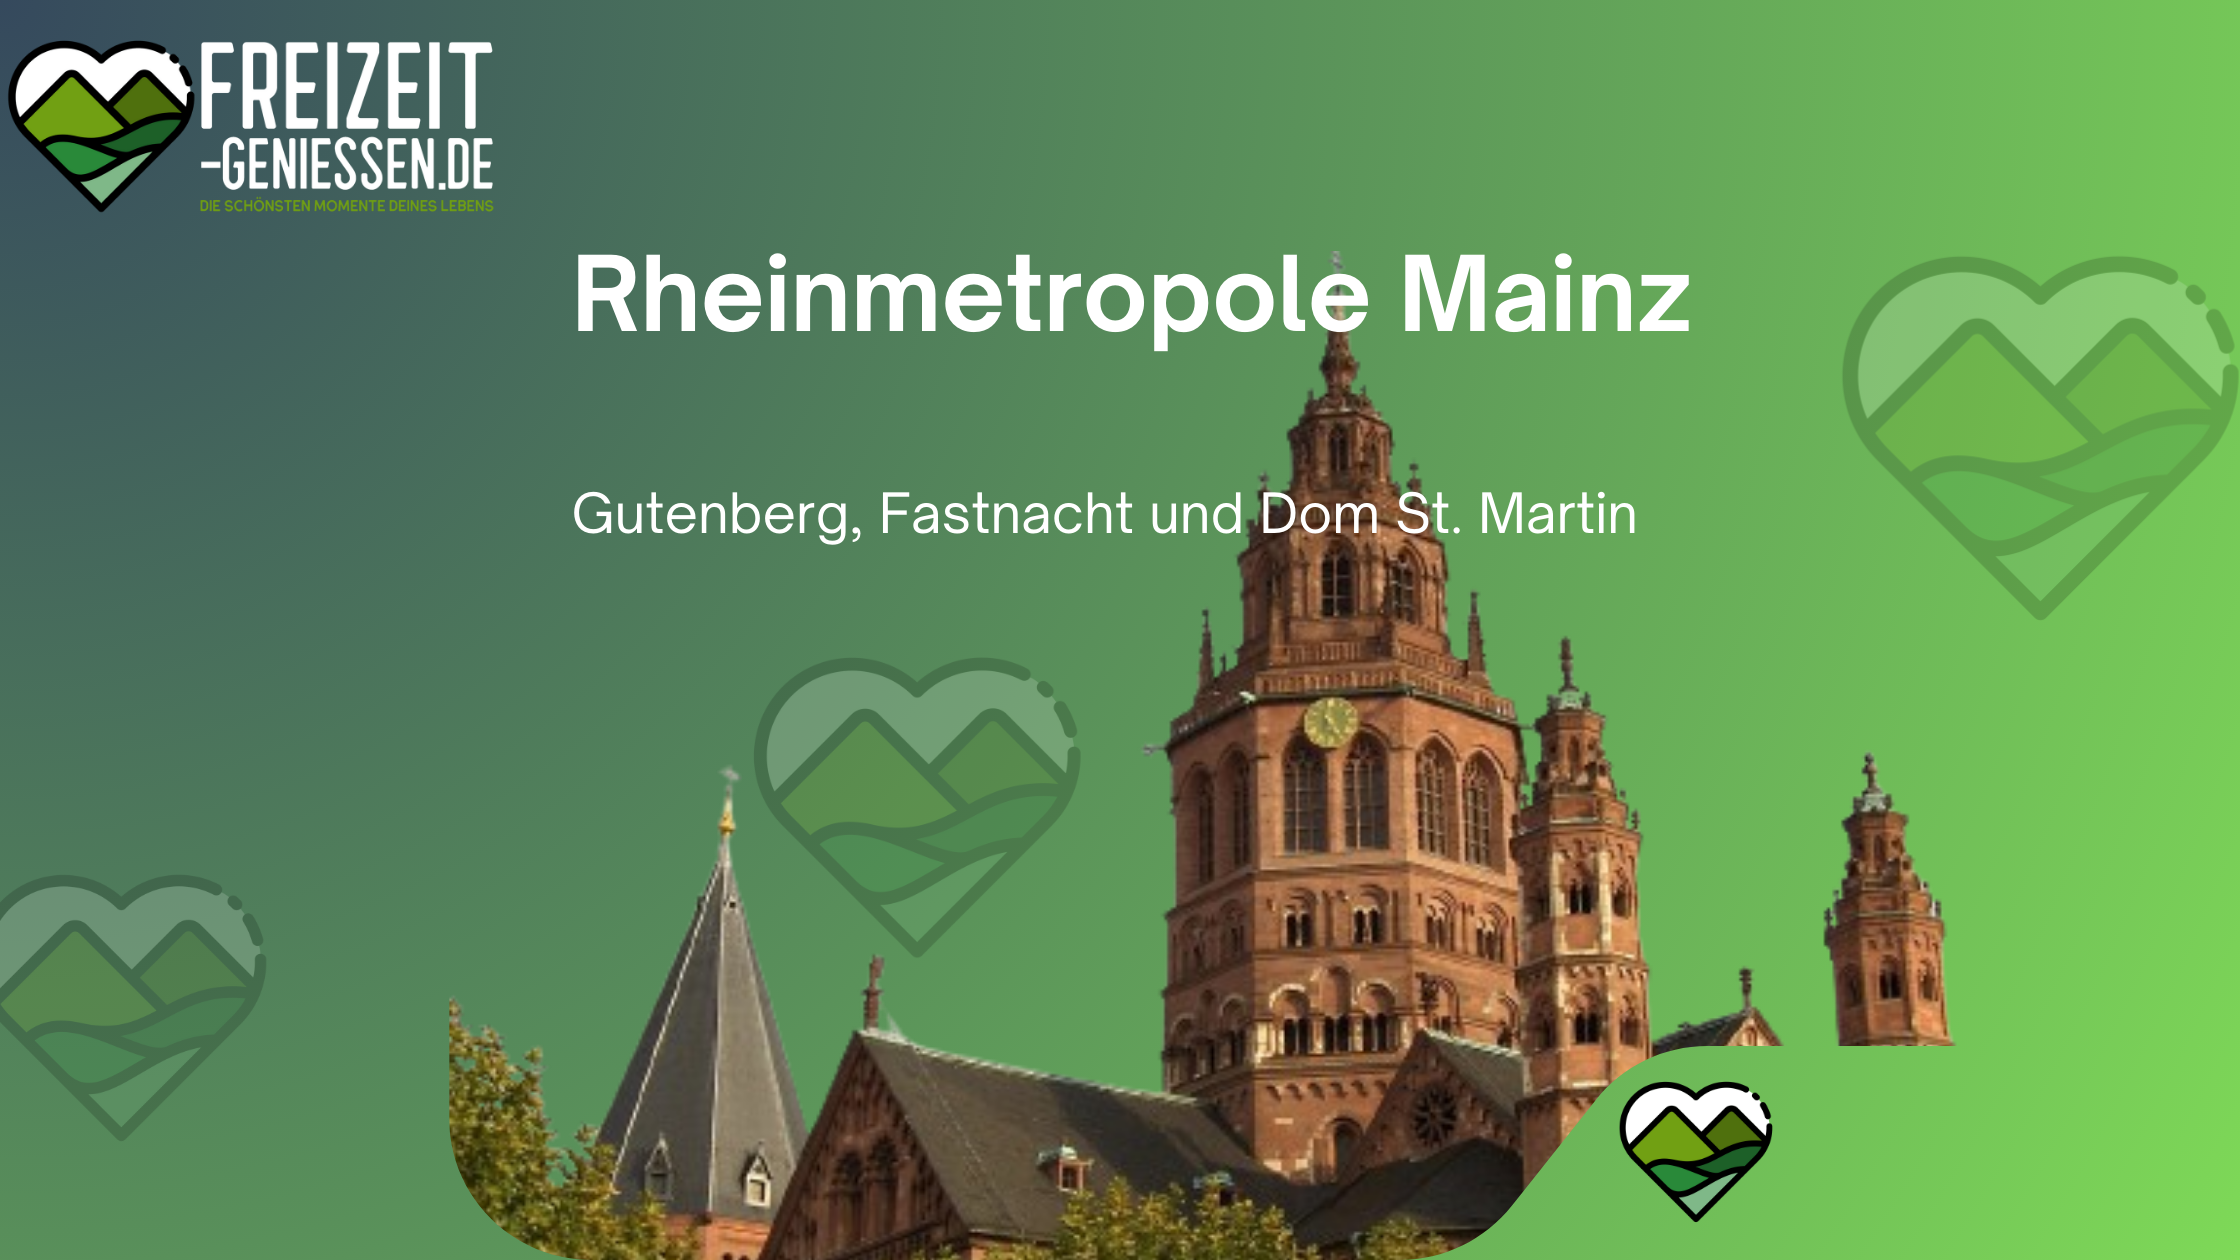 Landeshauptstadt von Rheinland-Pfalz Mainz auf freizeit-geniessen.de. Der Mainzer Dom, ein Wahrzeichen der Stadt